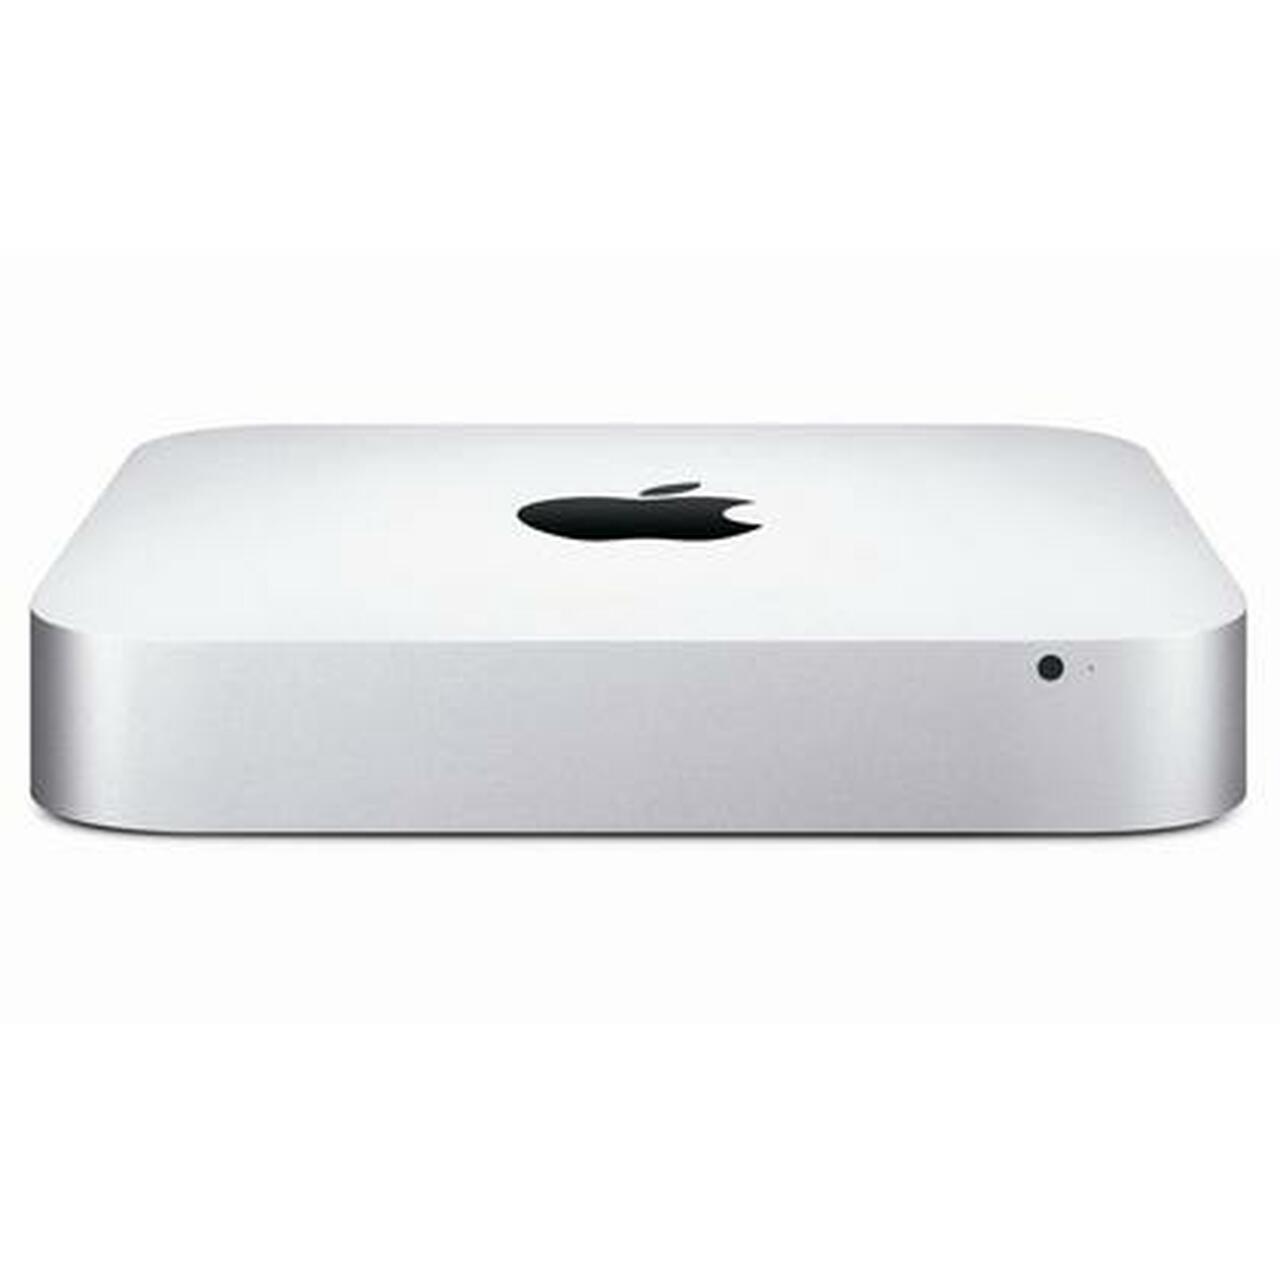 Apple Mac mini MD388LL/A - Intel i7 / 16GB Ram / 1TB HDD / OS Catalina